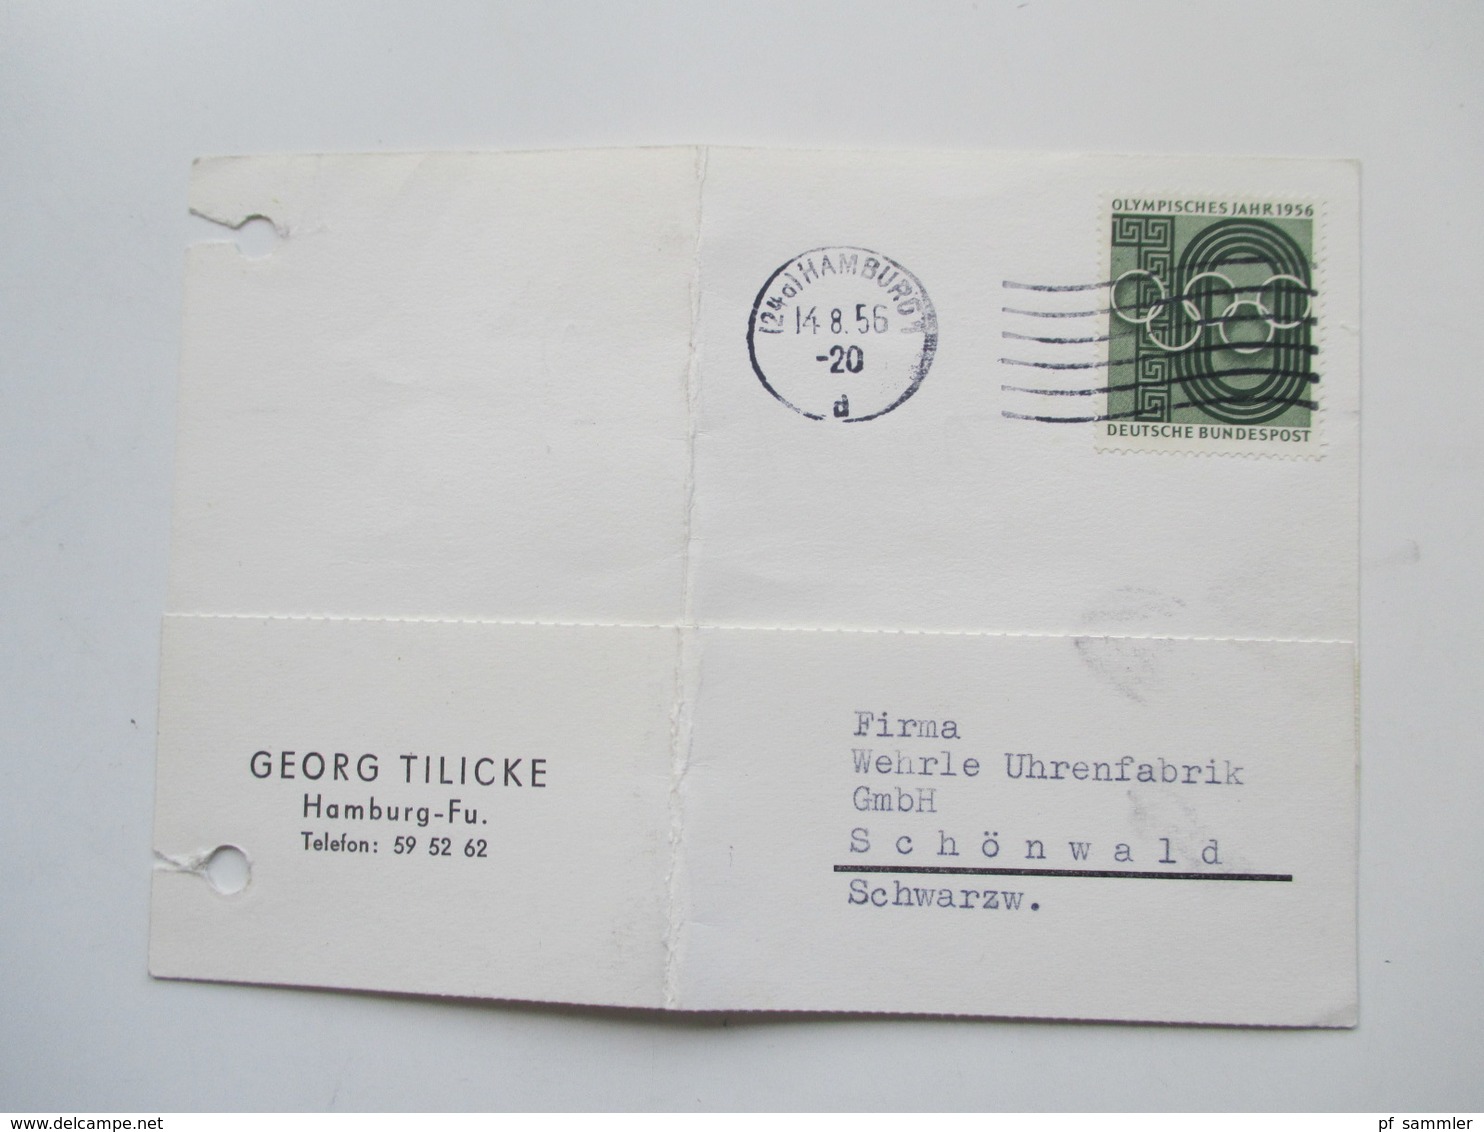 BRD 1950er Jahre ab 1951. 40 Postkarten / Belege / Firmenkorrespondenz! EF / MiF / MeF interessante Stücke!